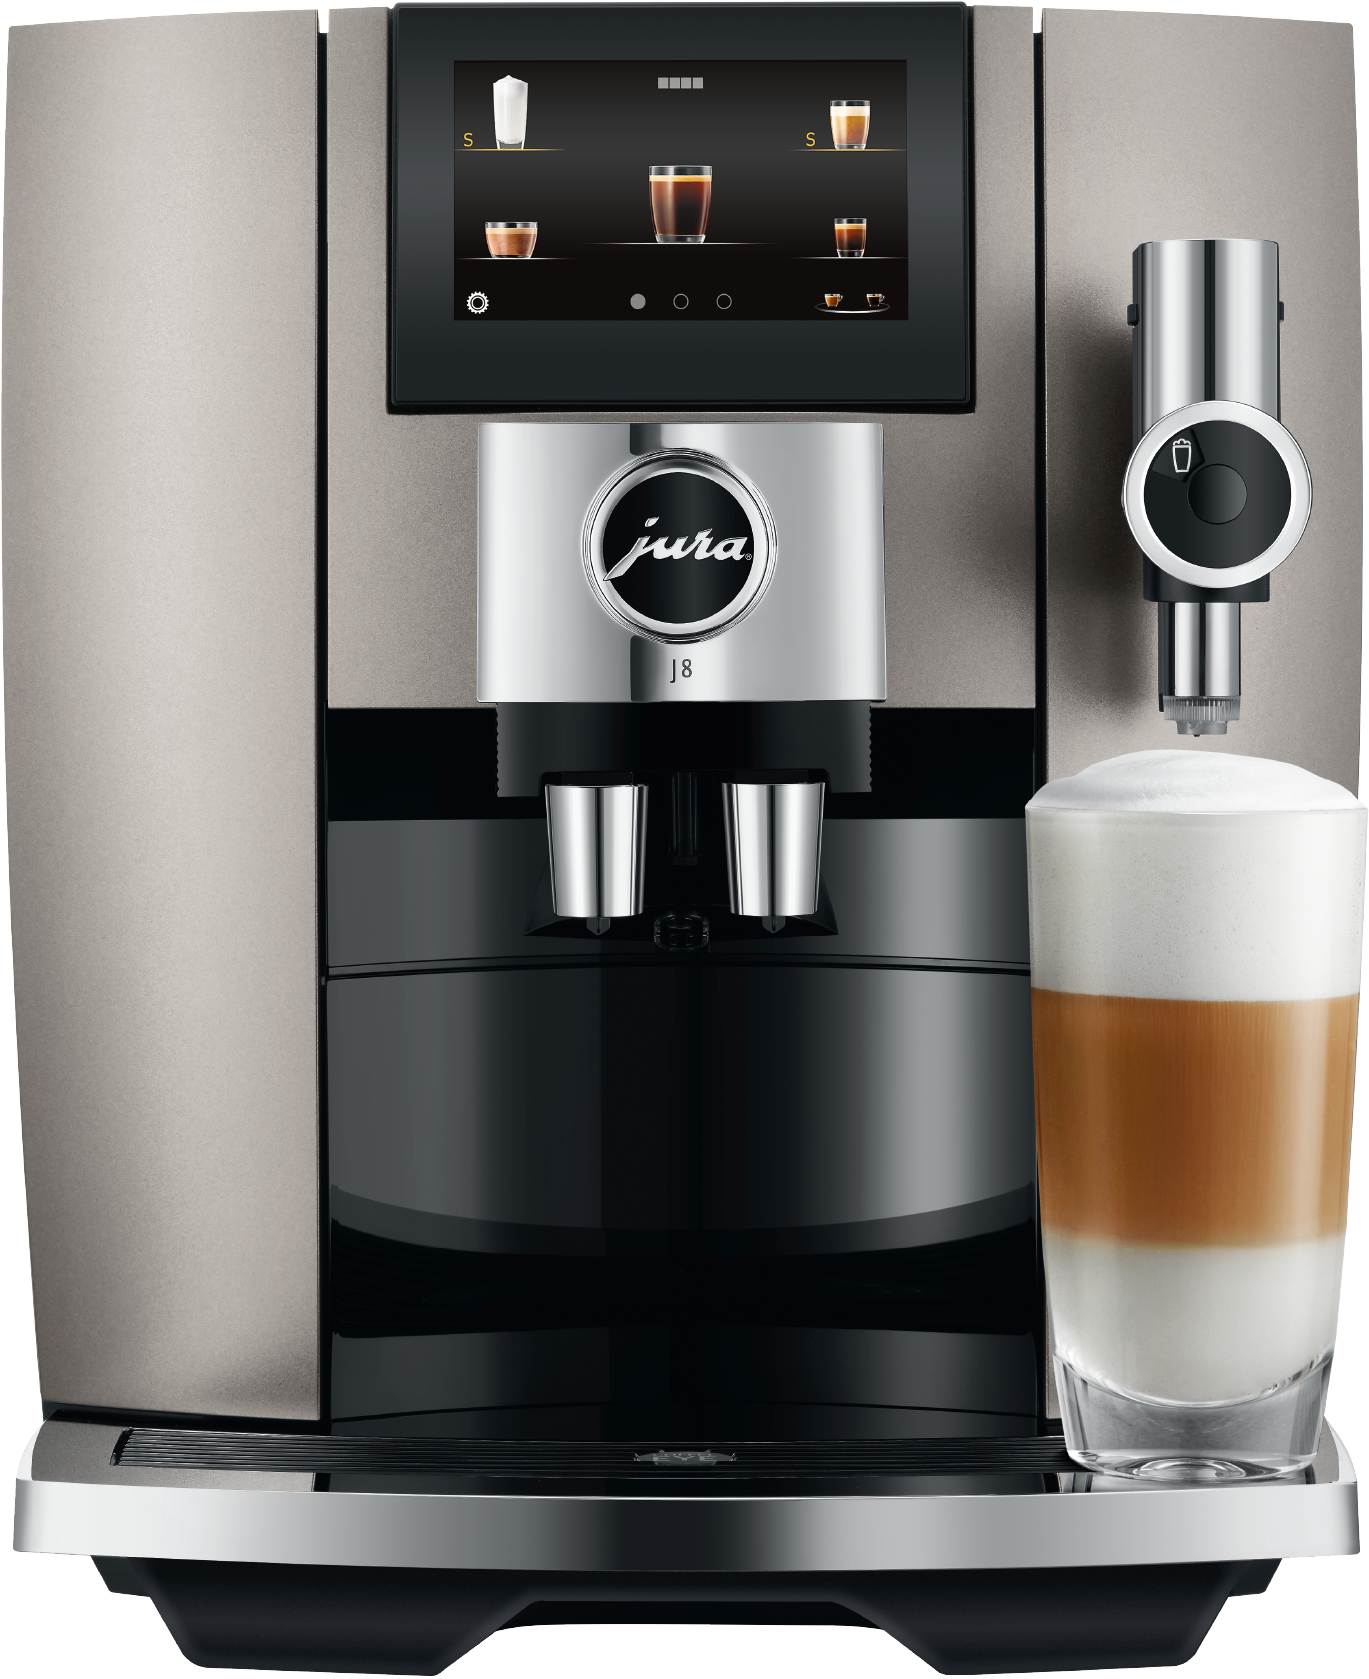 Machine à café automatique J8 disponible chez Inox & Passion